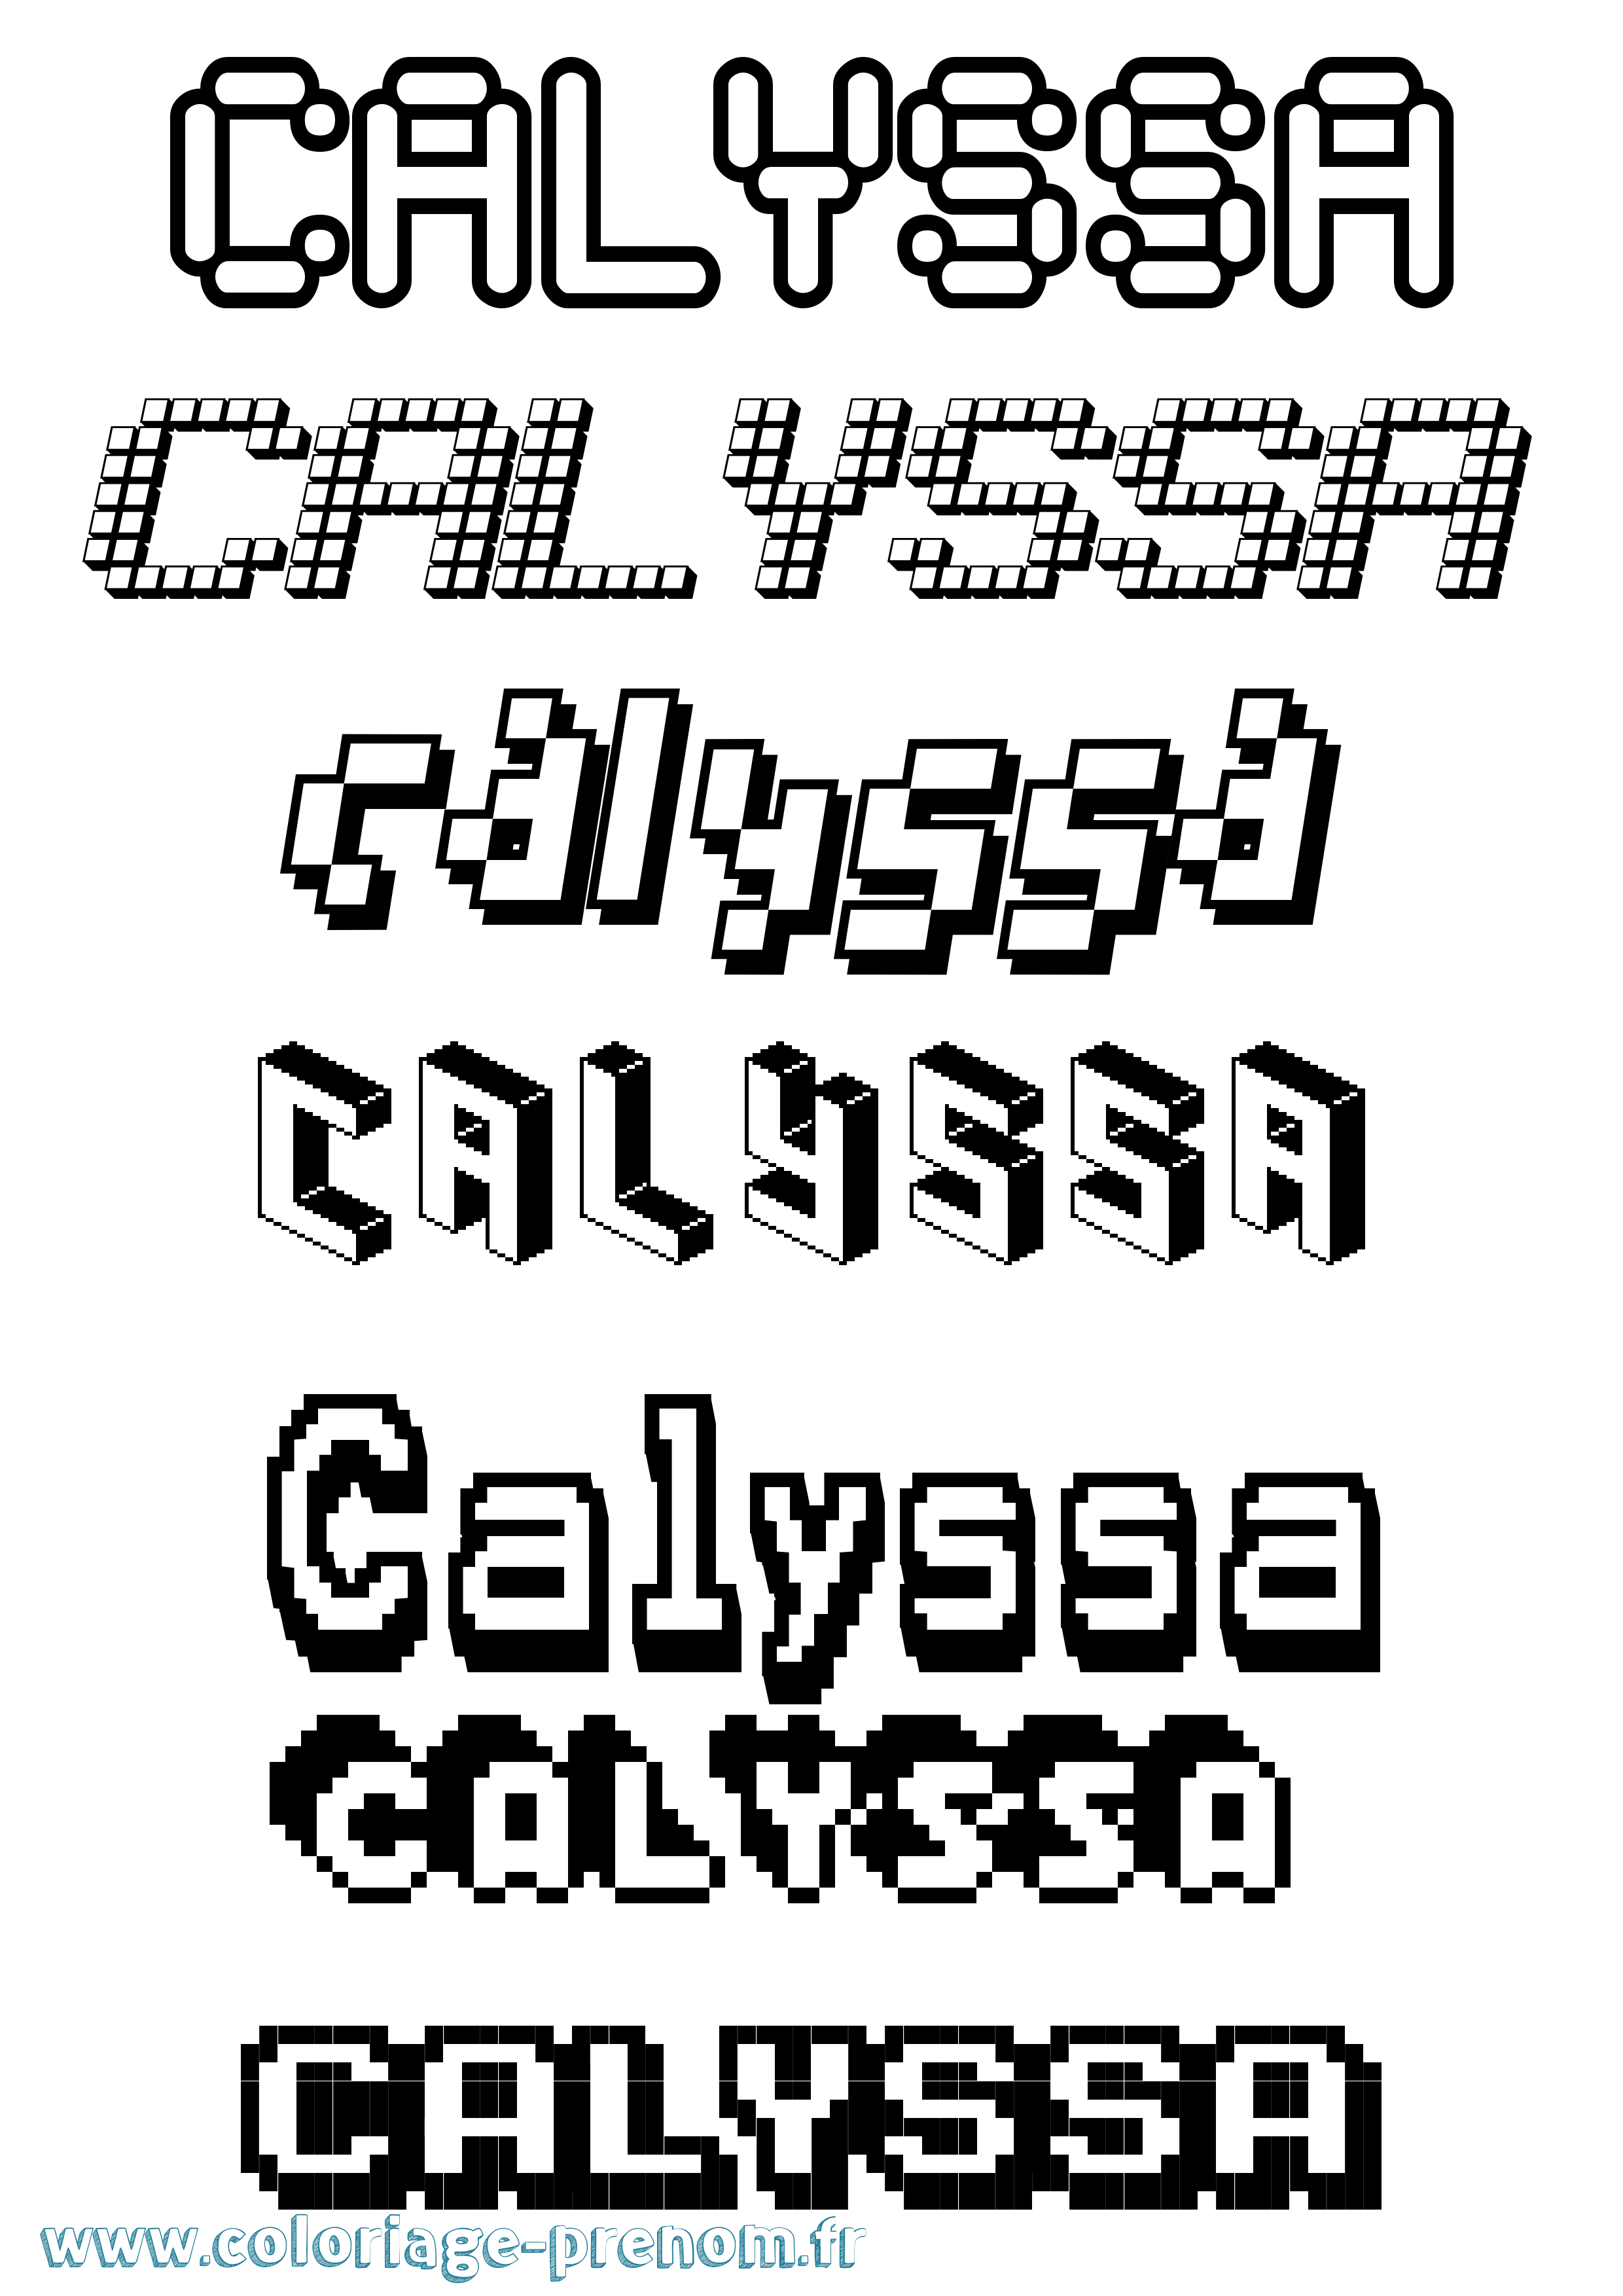 Coloriage prénom Calyssa Pixel